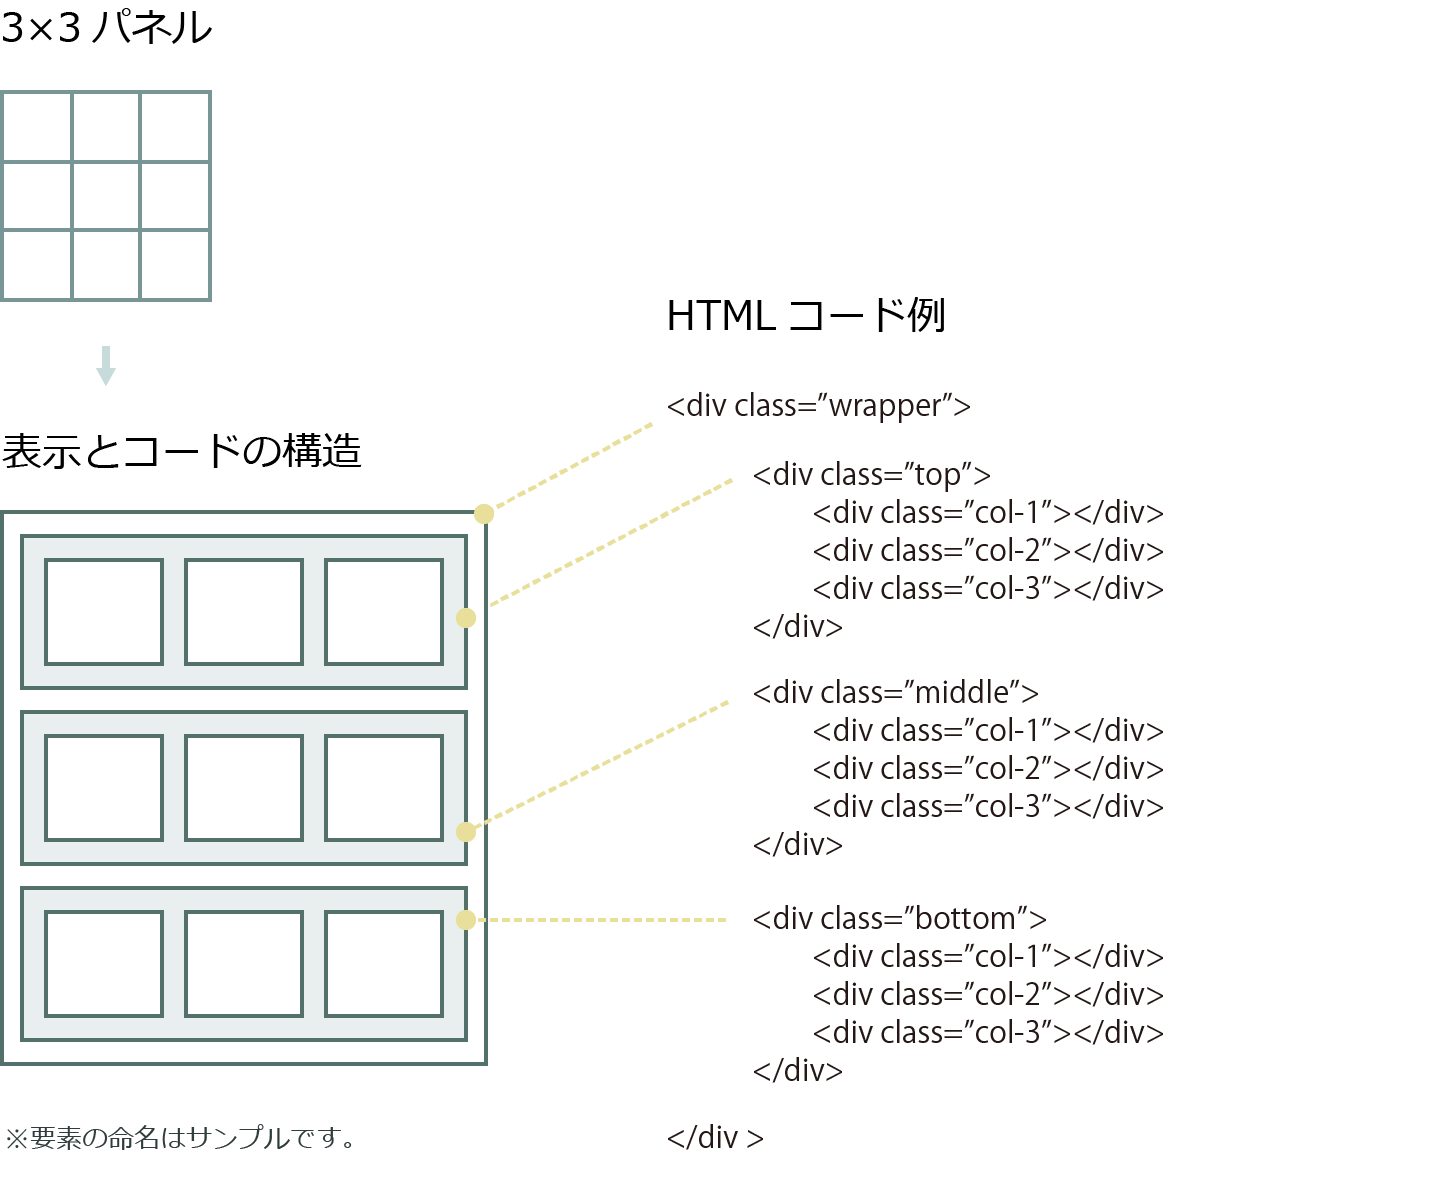 3×3パネルのコード化 イメージ図